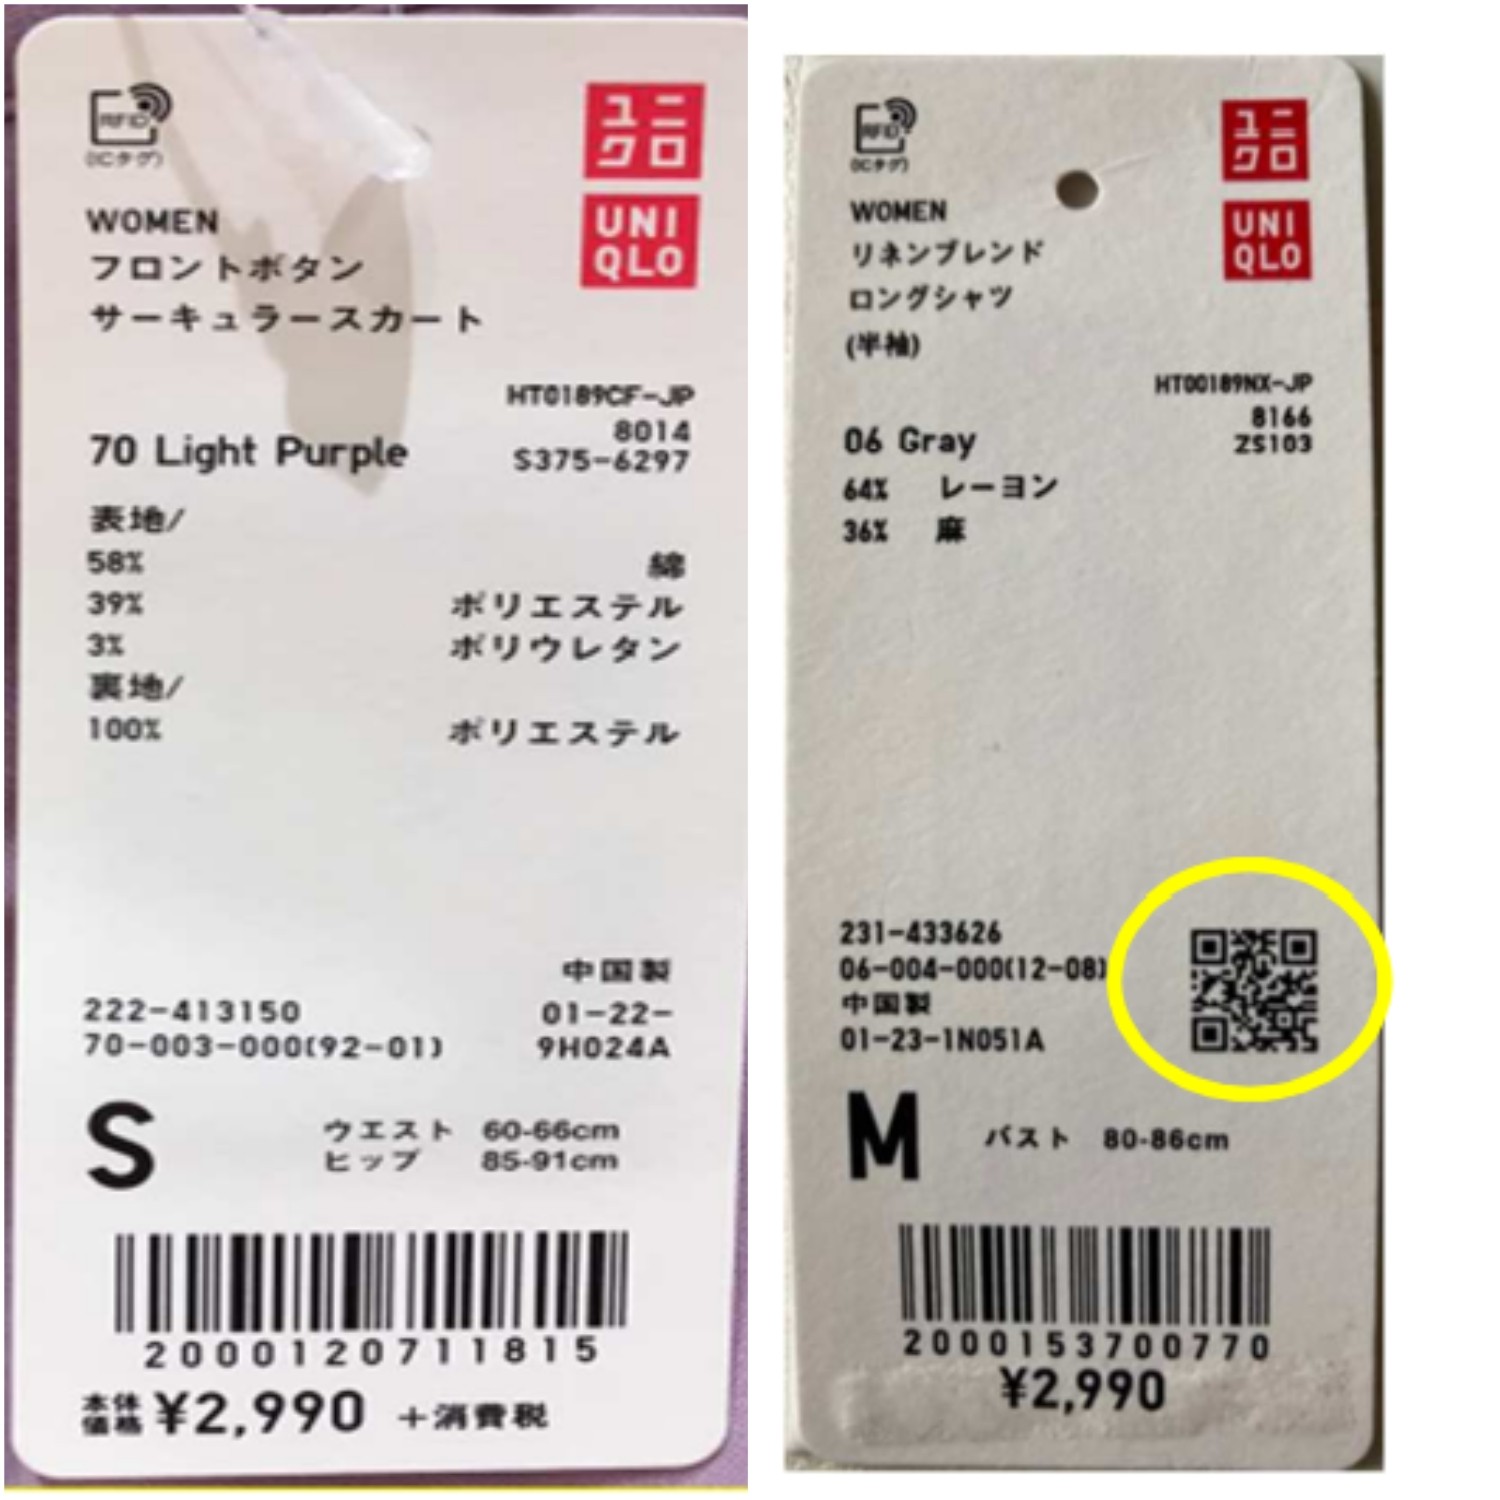 Hướng dẫn cách check code áo uniqlo chuẩn xác nhất JAPANSHOPVN